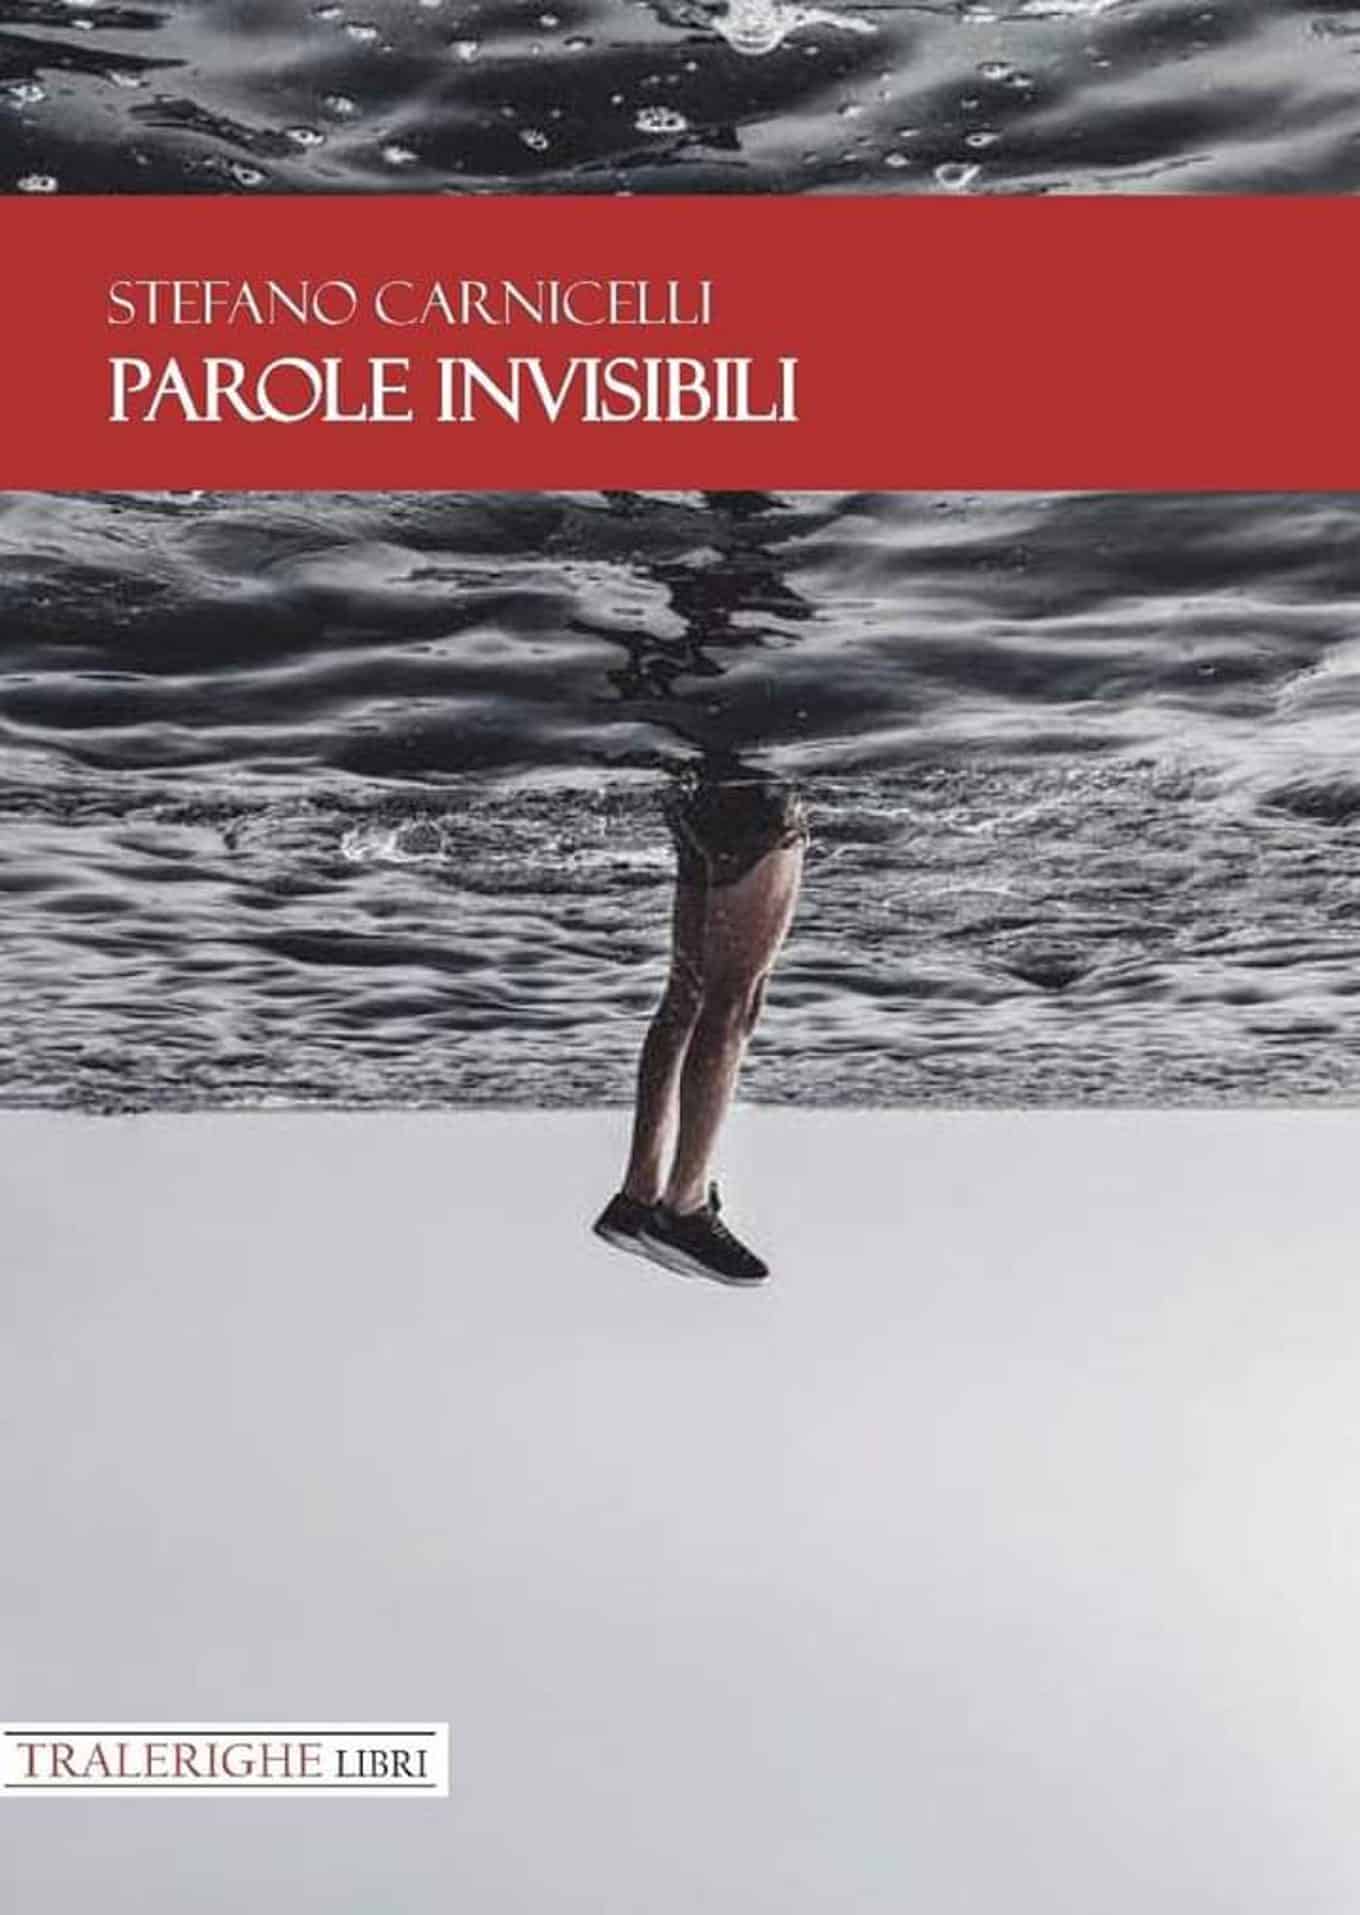 Parole invisibili 2019 di Stefano Carnicelli Recensione del libro featured